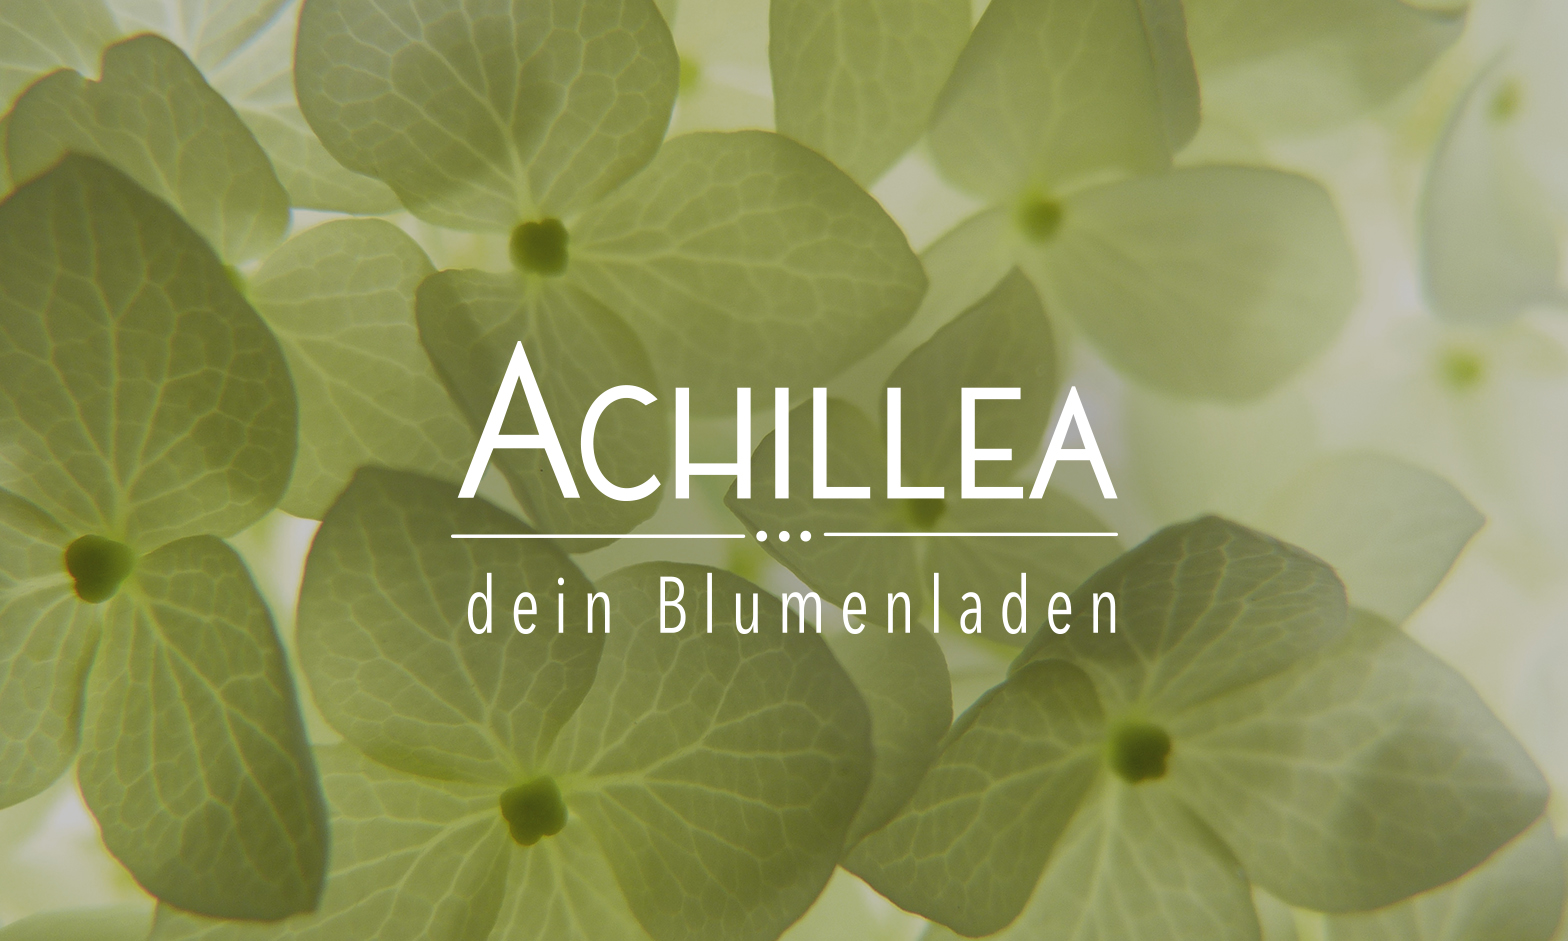 Autoschmuck - Achillea Dein Blumenladen